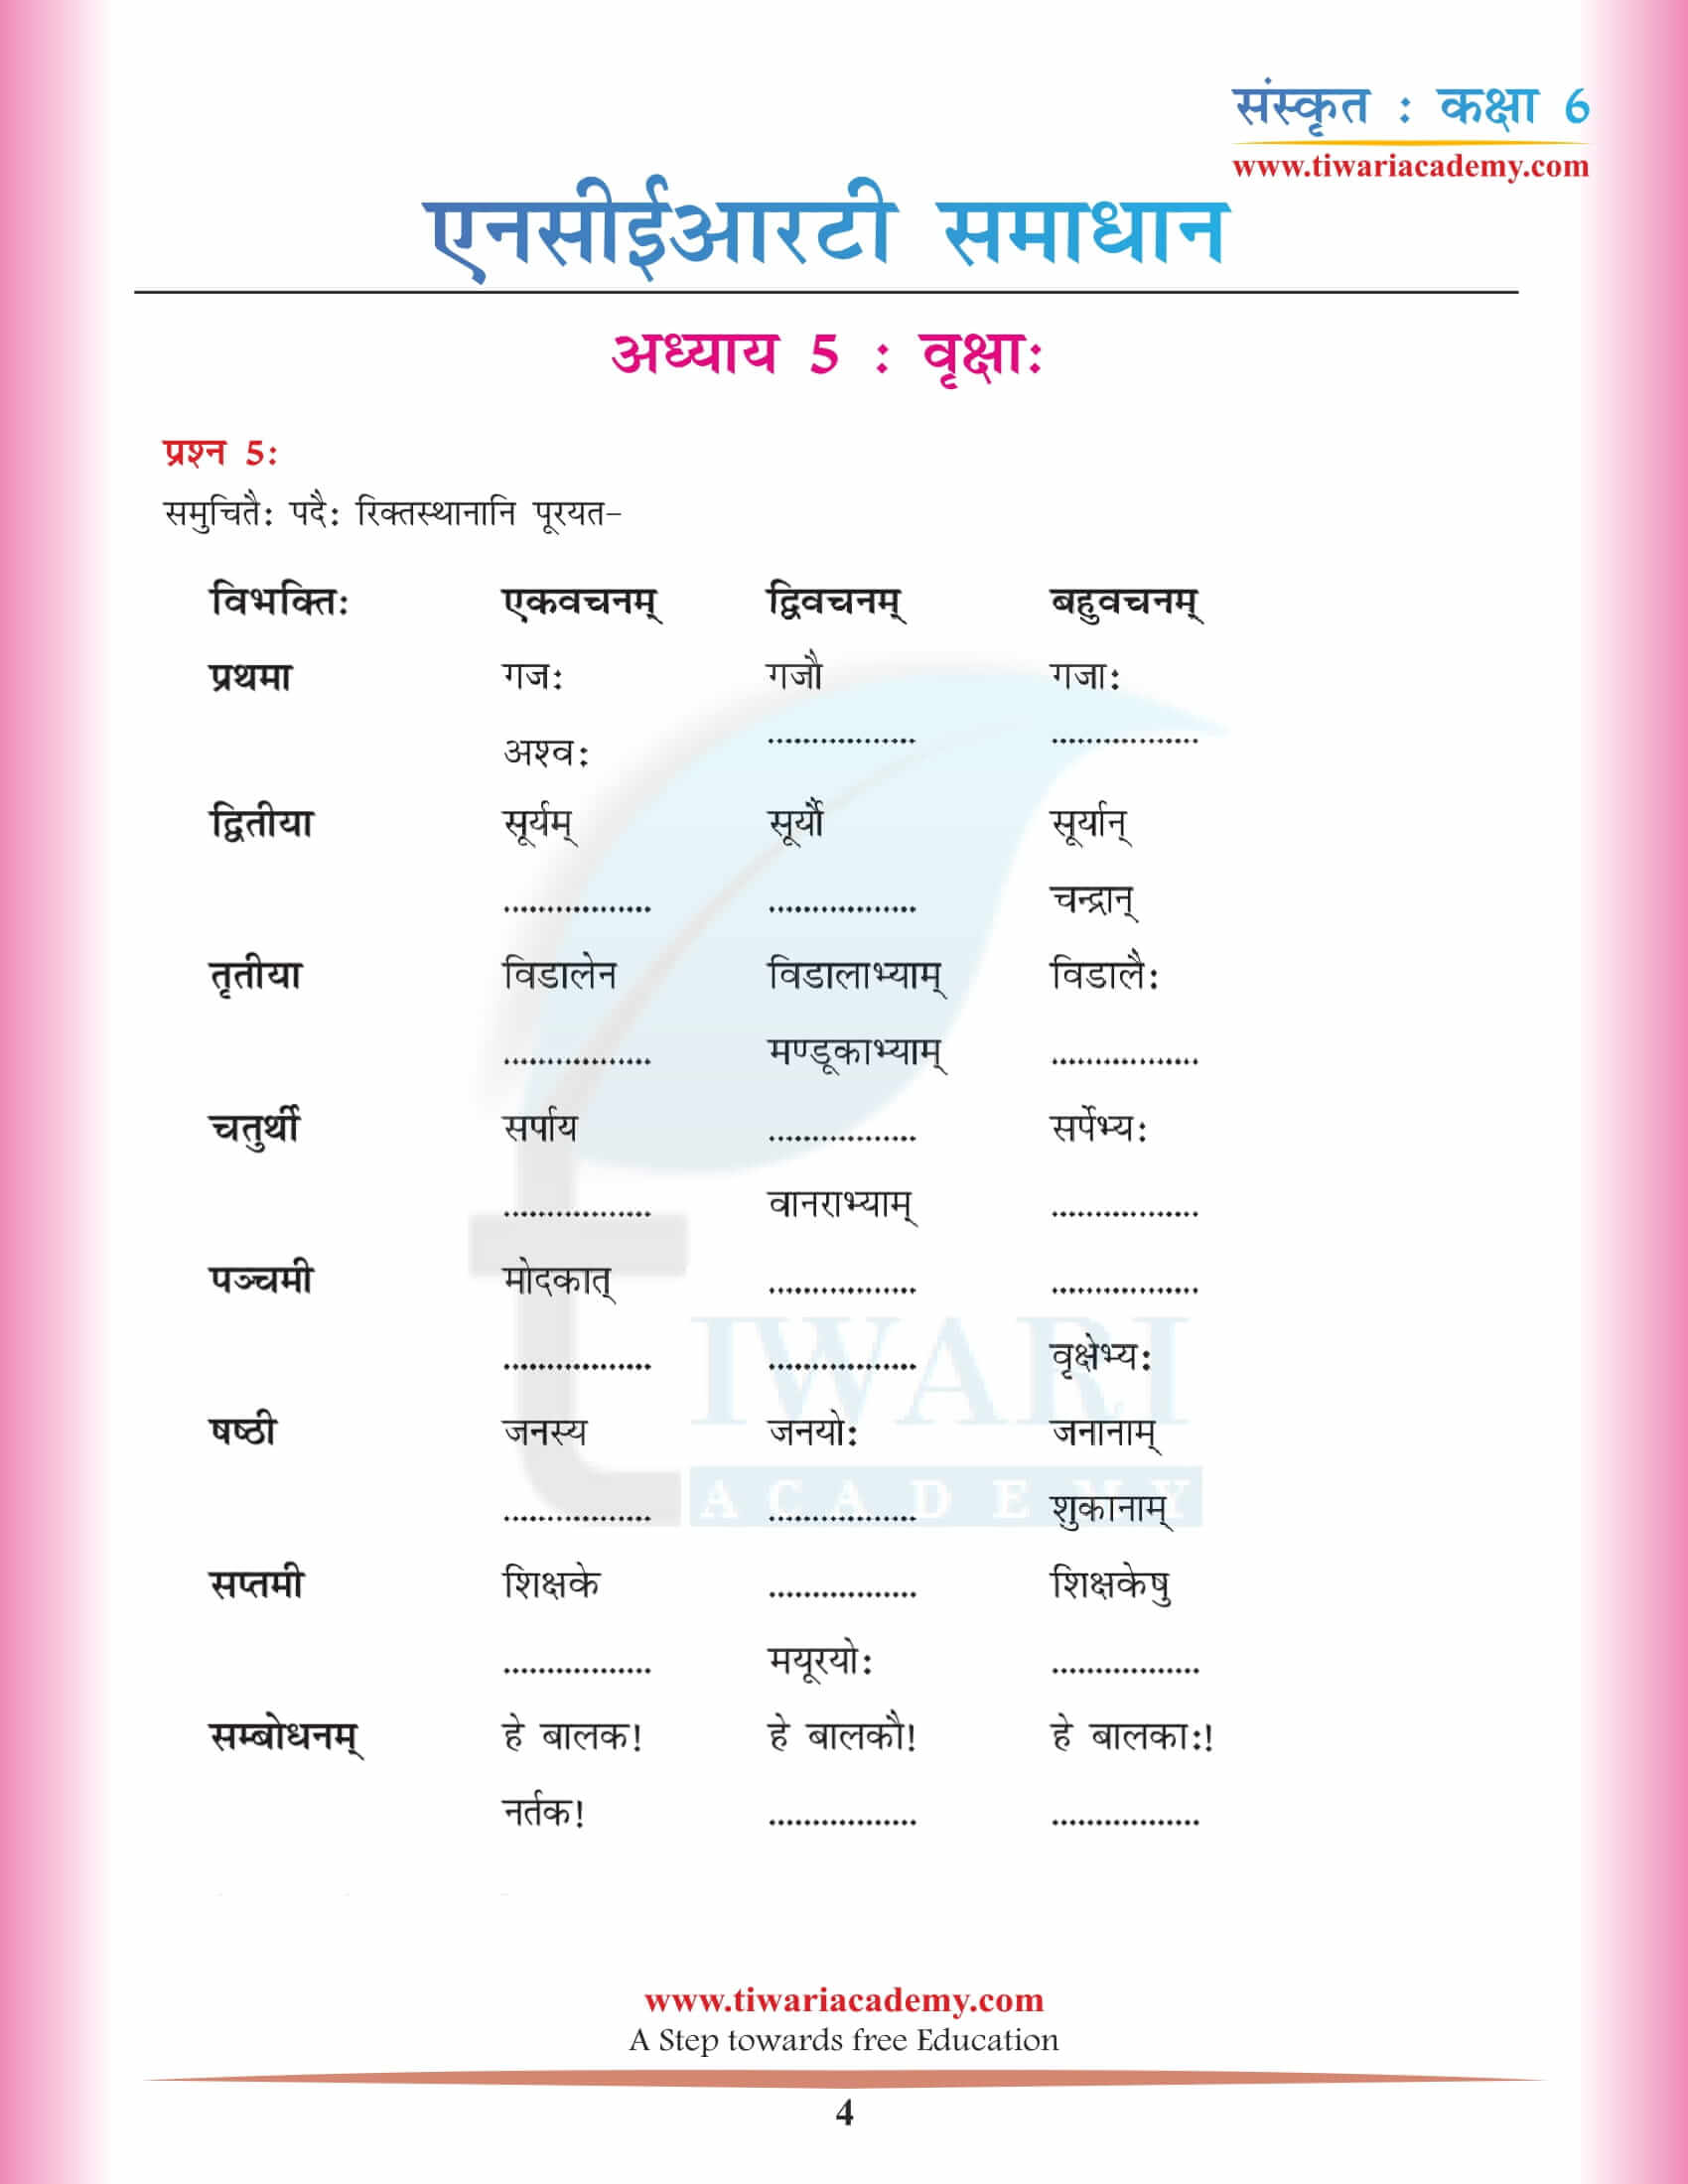 कक्षा 6 संस्कृत अध्याय 5 एनसीईआरटी के उत्तर हिंदी में